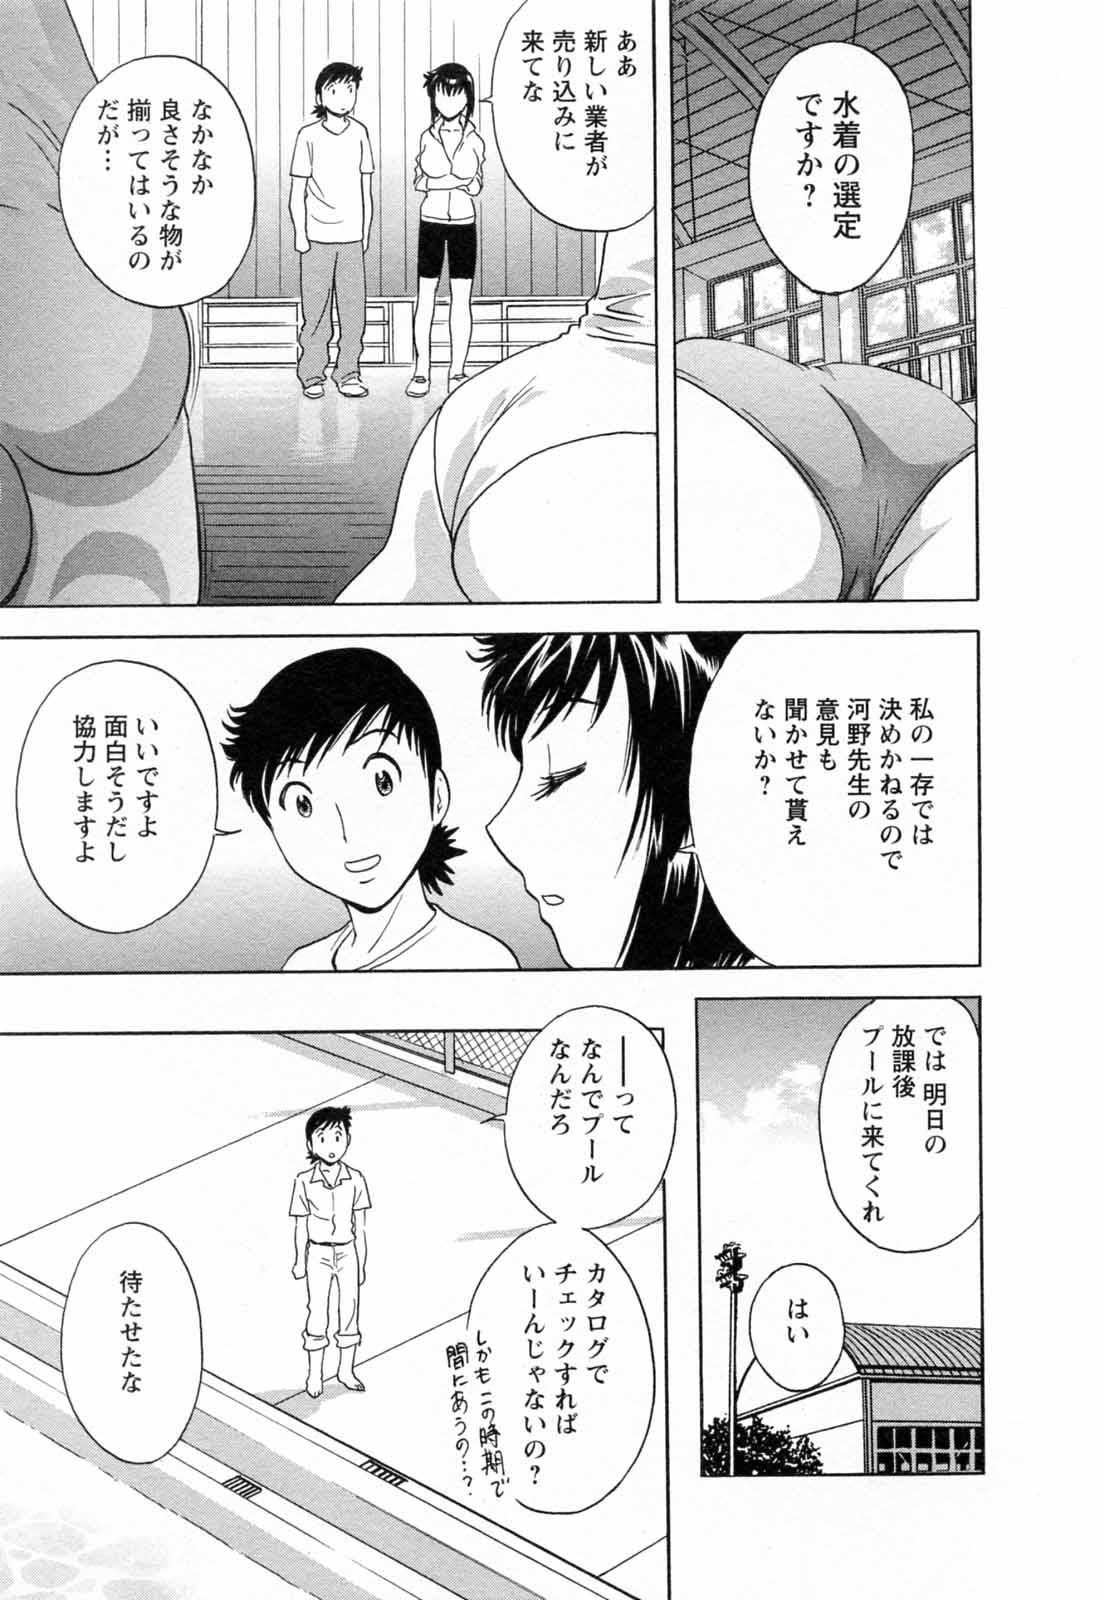 [Hidemaru] Mo-Retsu! Boin Sensei (Boing Boing Teacher) Vol.5 116